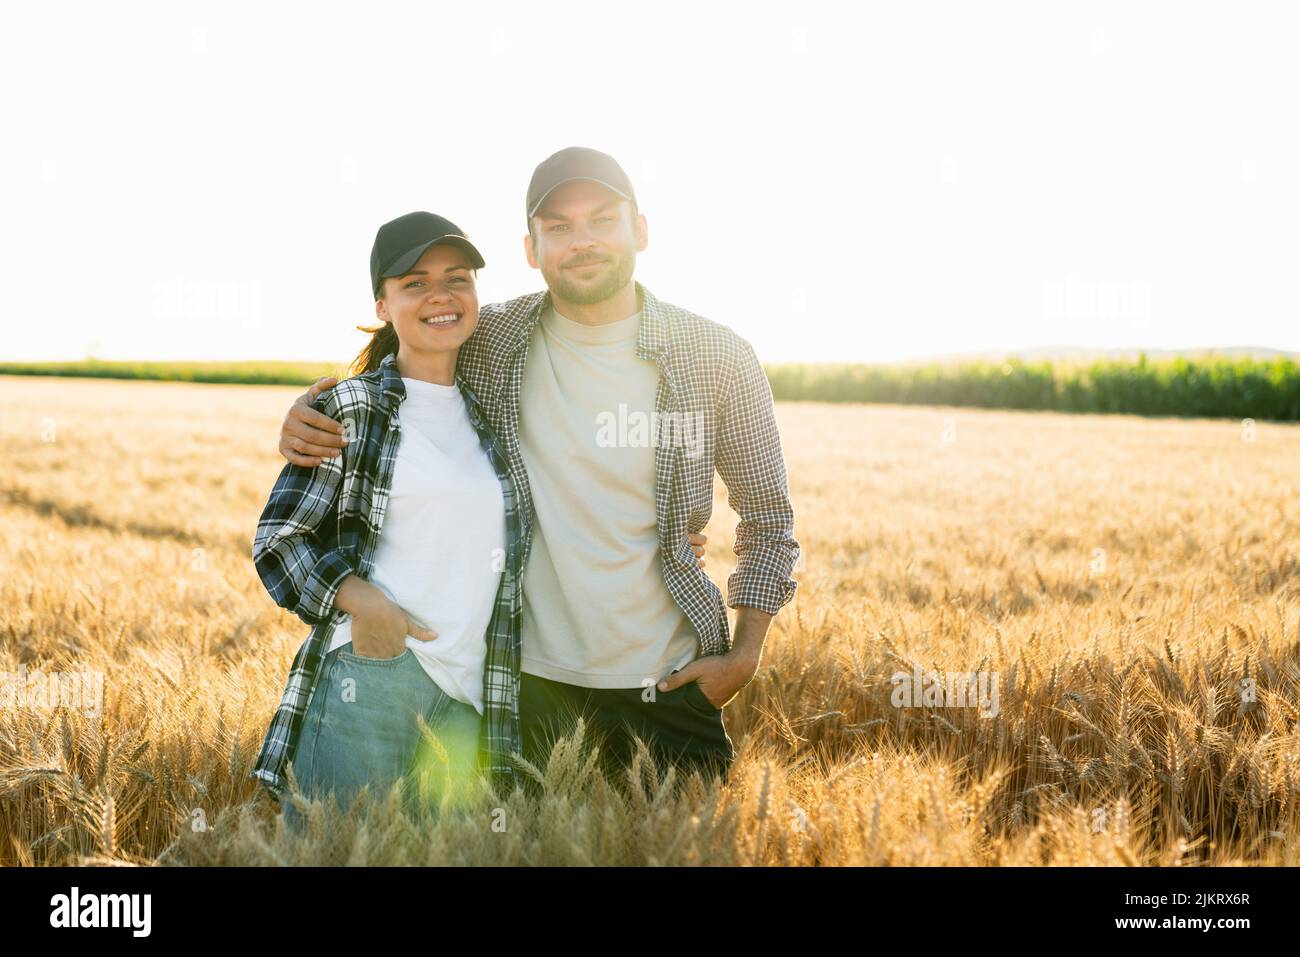 Quelques agriculteurs en chemises et casquettes plaid embrassent le champ agricole de blé au coucher du soleil Banque D'Images